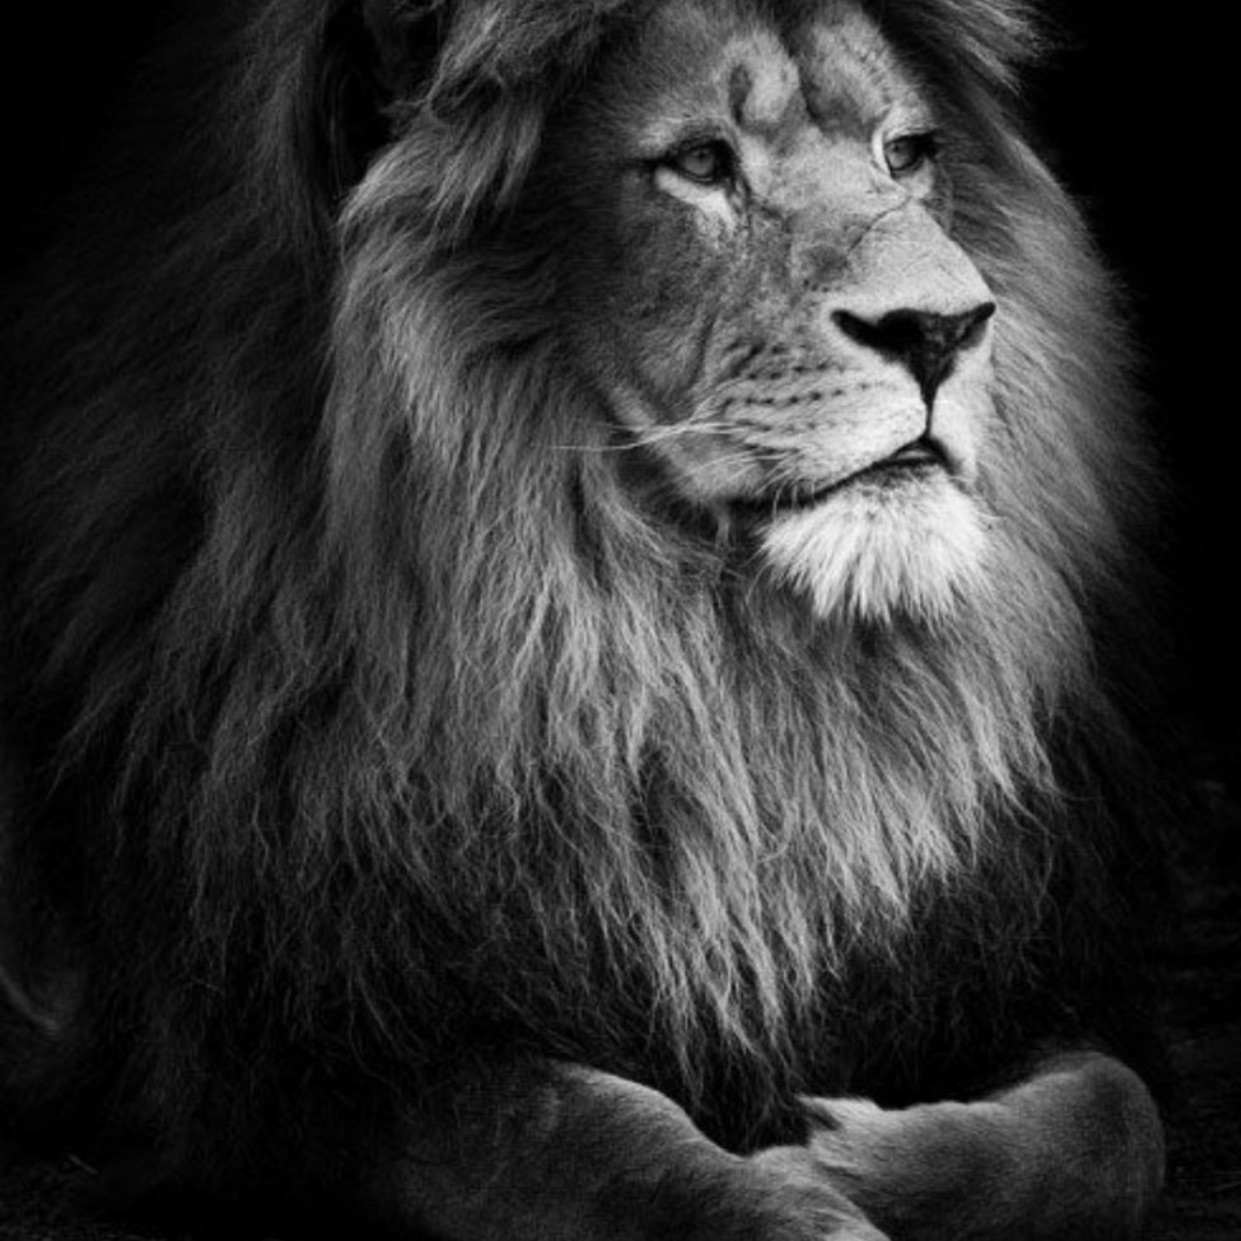 фото льва черно белое хорошее качество